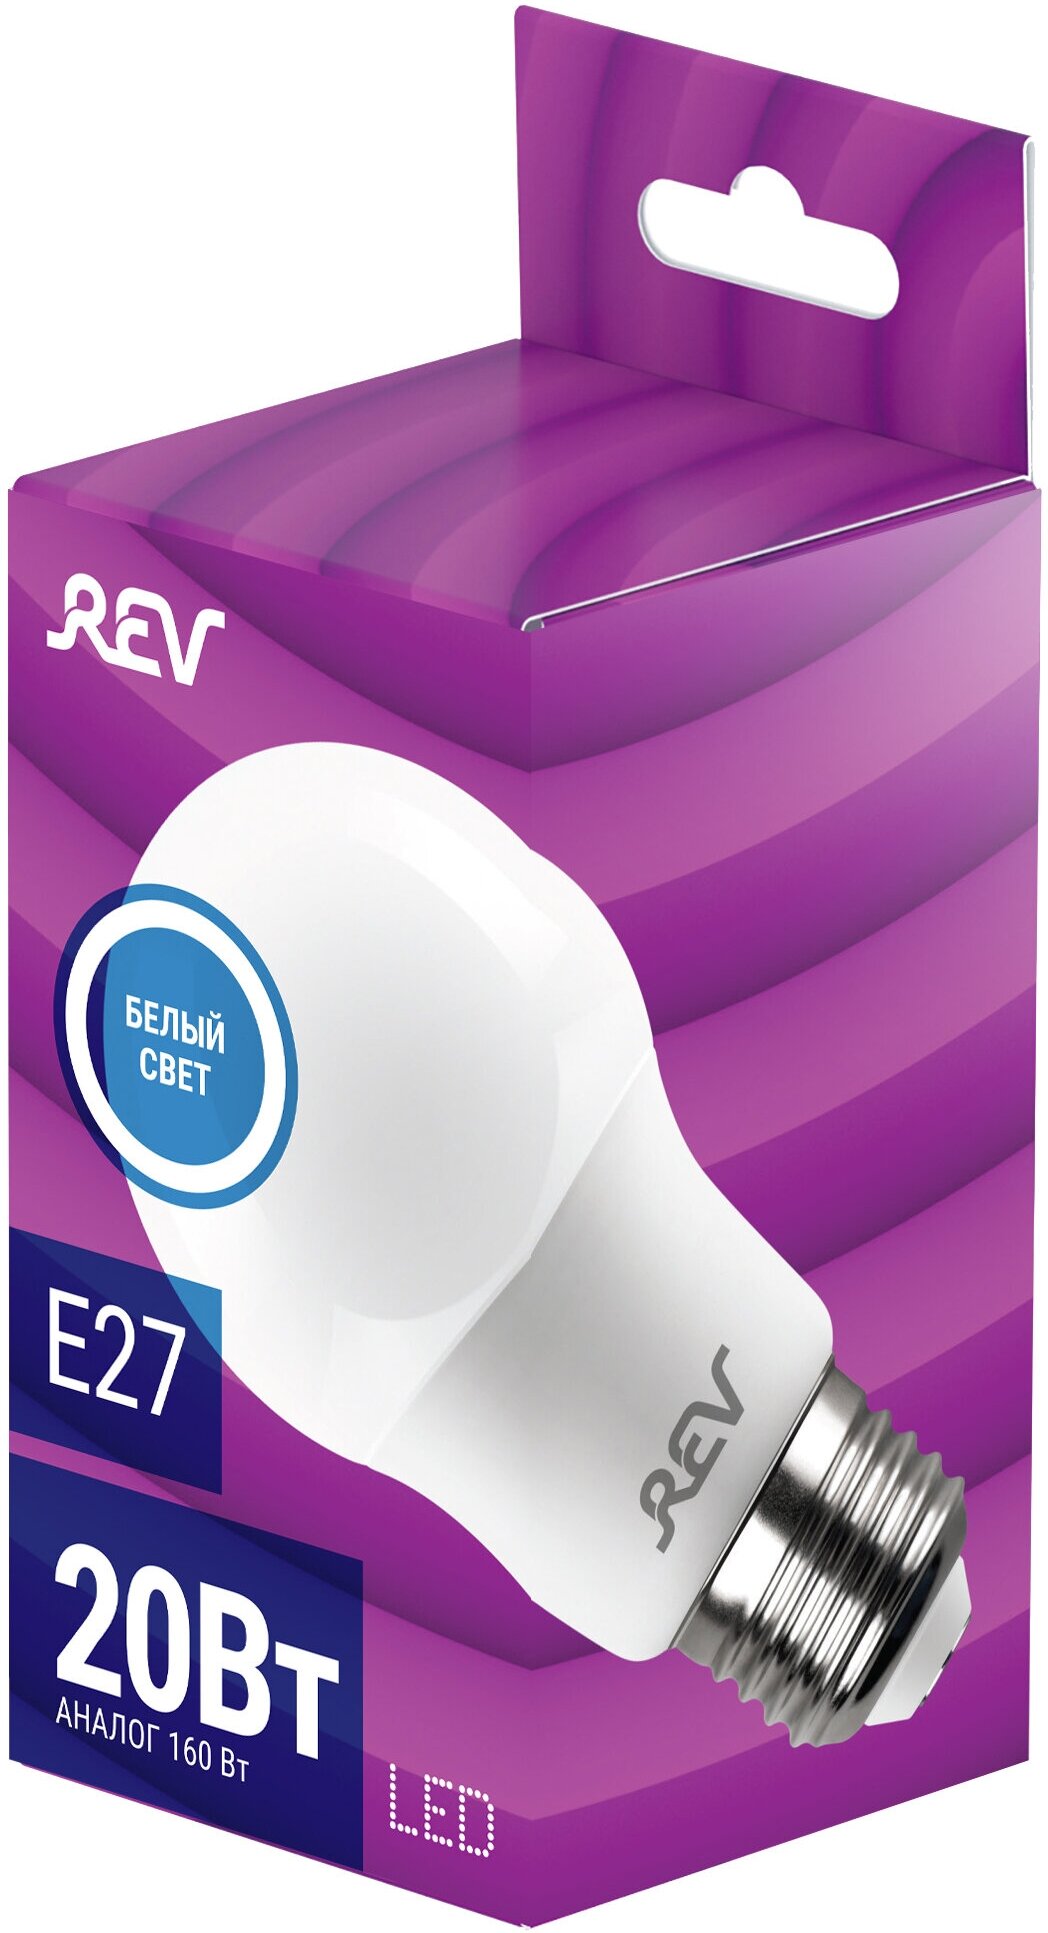 Упаковка светодиодных ламп 3 шт REV 32405 8, 4000К, Е27, A60, 20Вт - фотография № 3